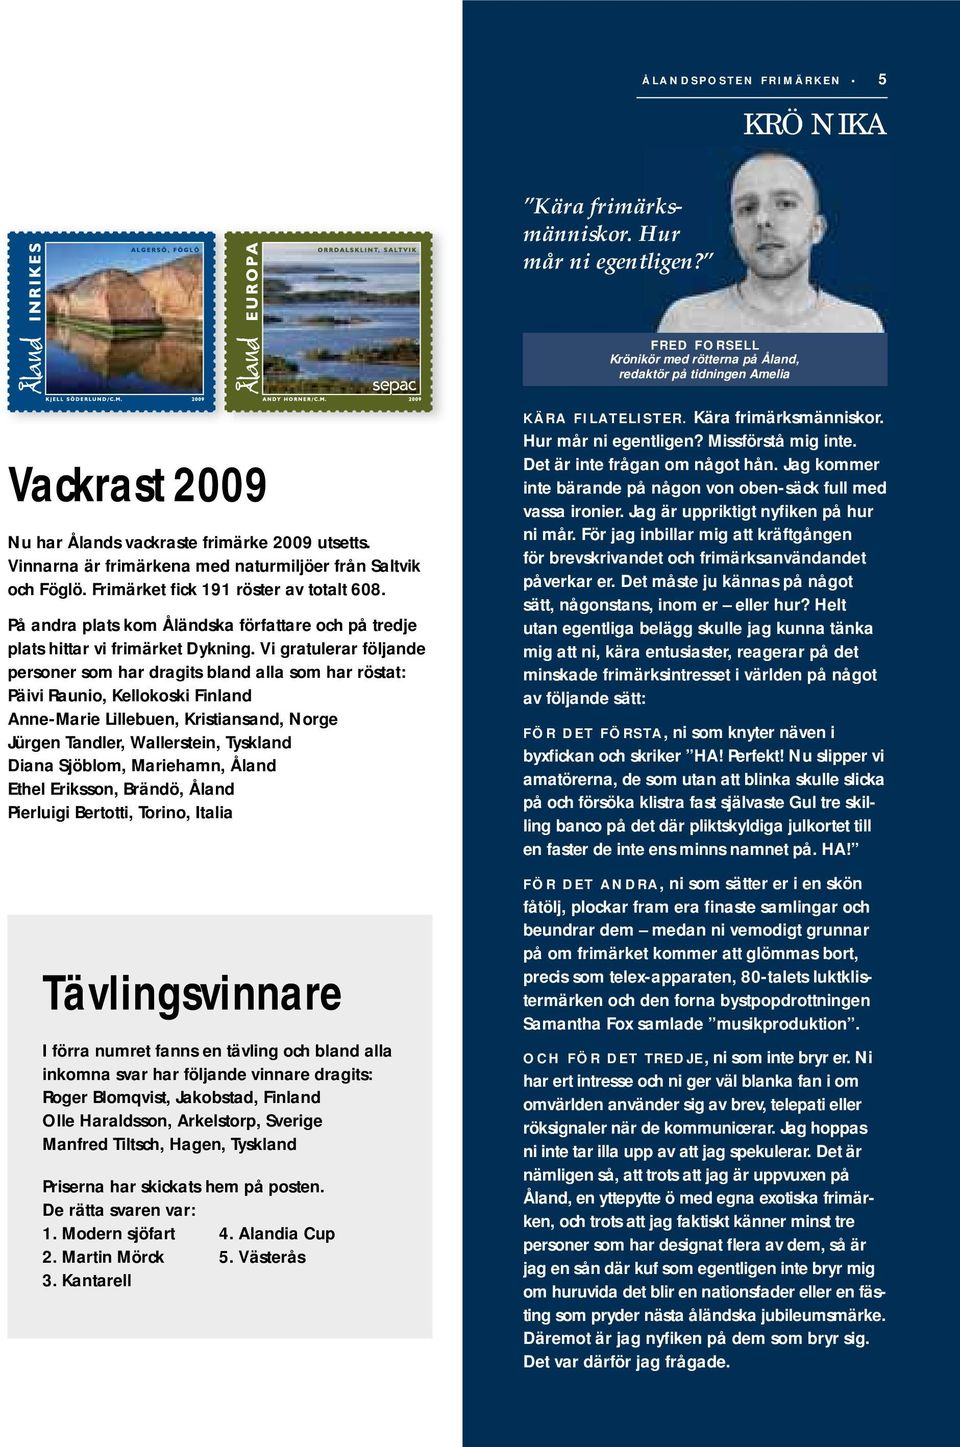 Frimärket fick 191 röster av totalt 608. På andra plats kom Åländska författare och på tredje plats hittar vi frimärket Dykning.